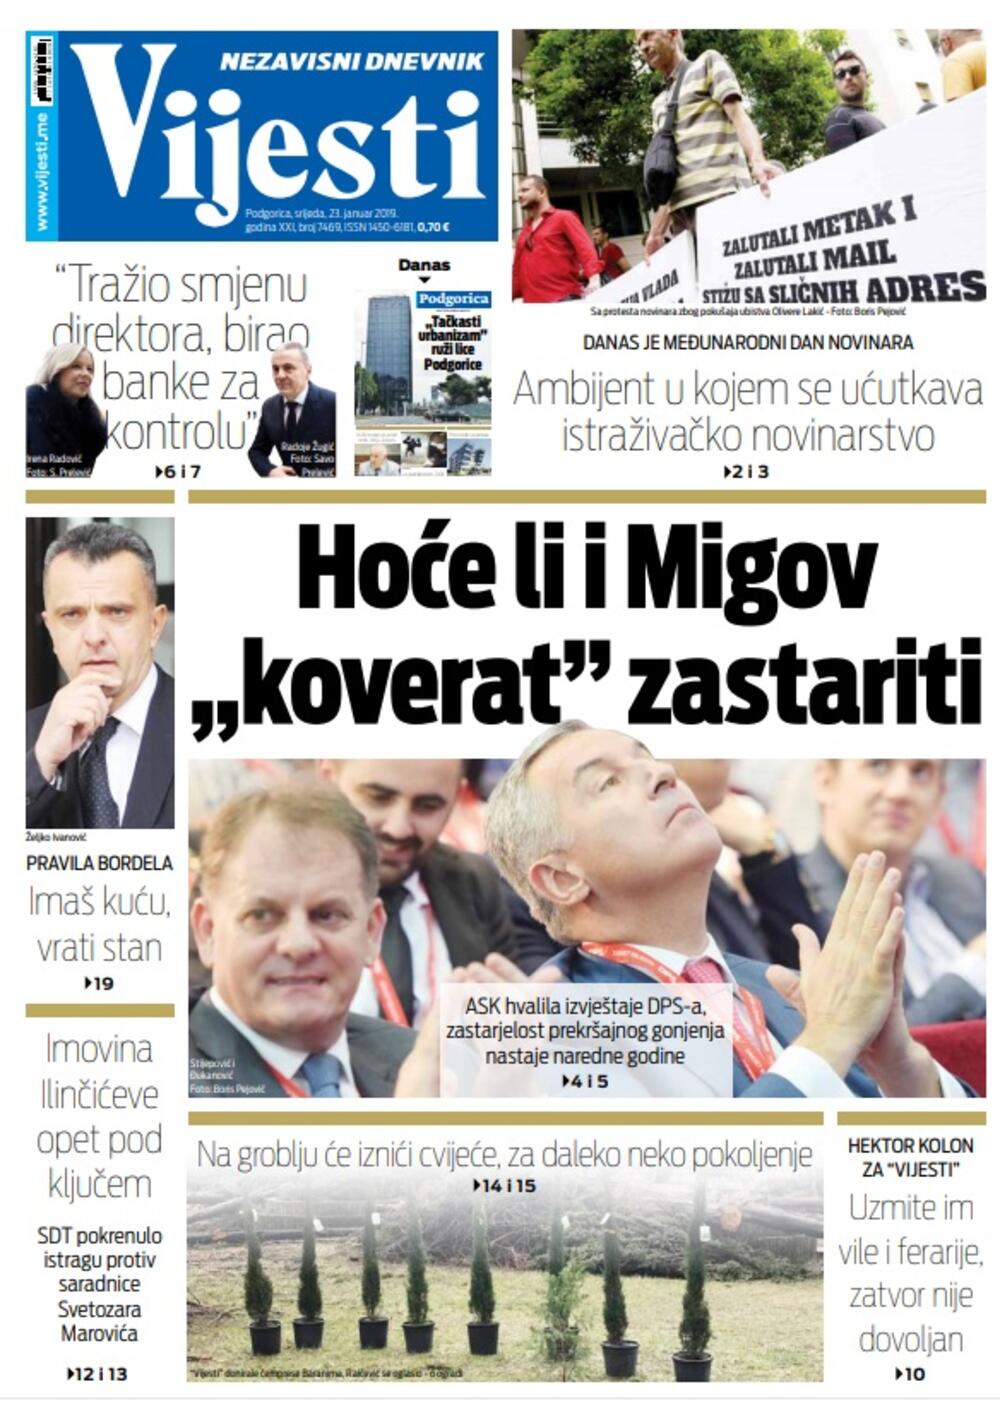 Naslovna strana "Vijesti" 23.1., Foto: Vijesti